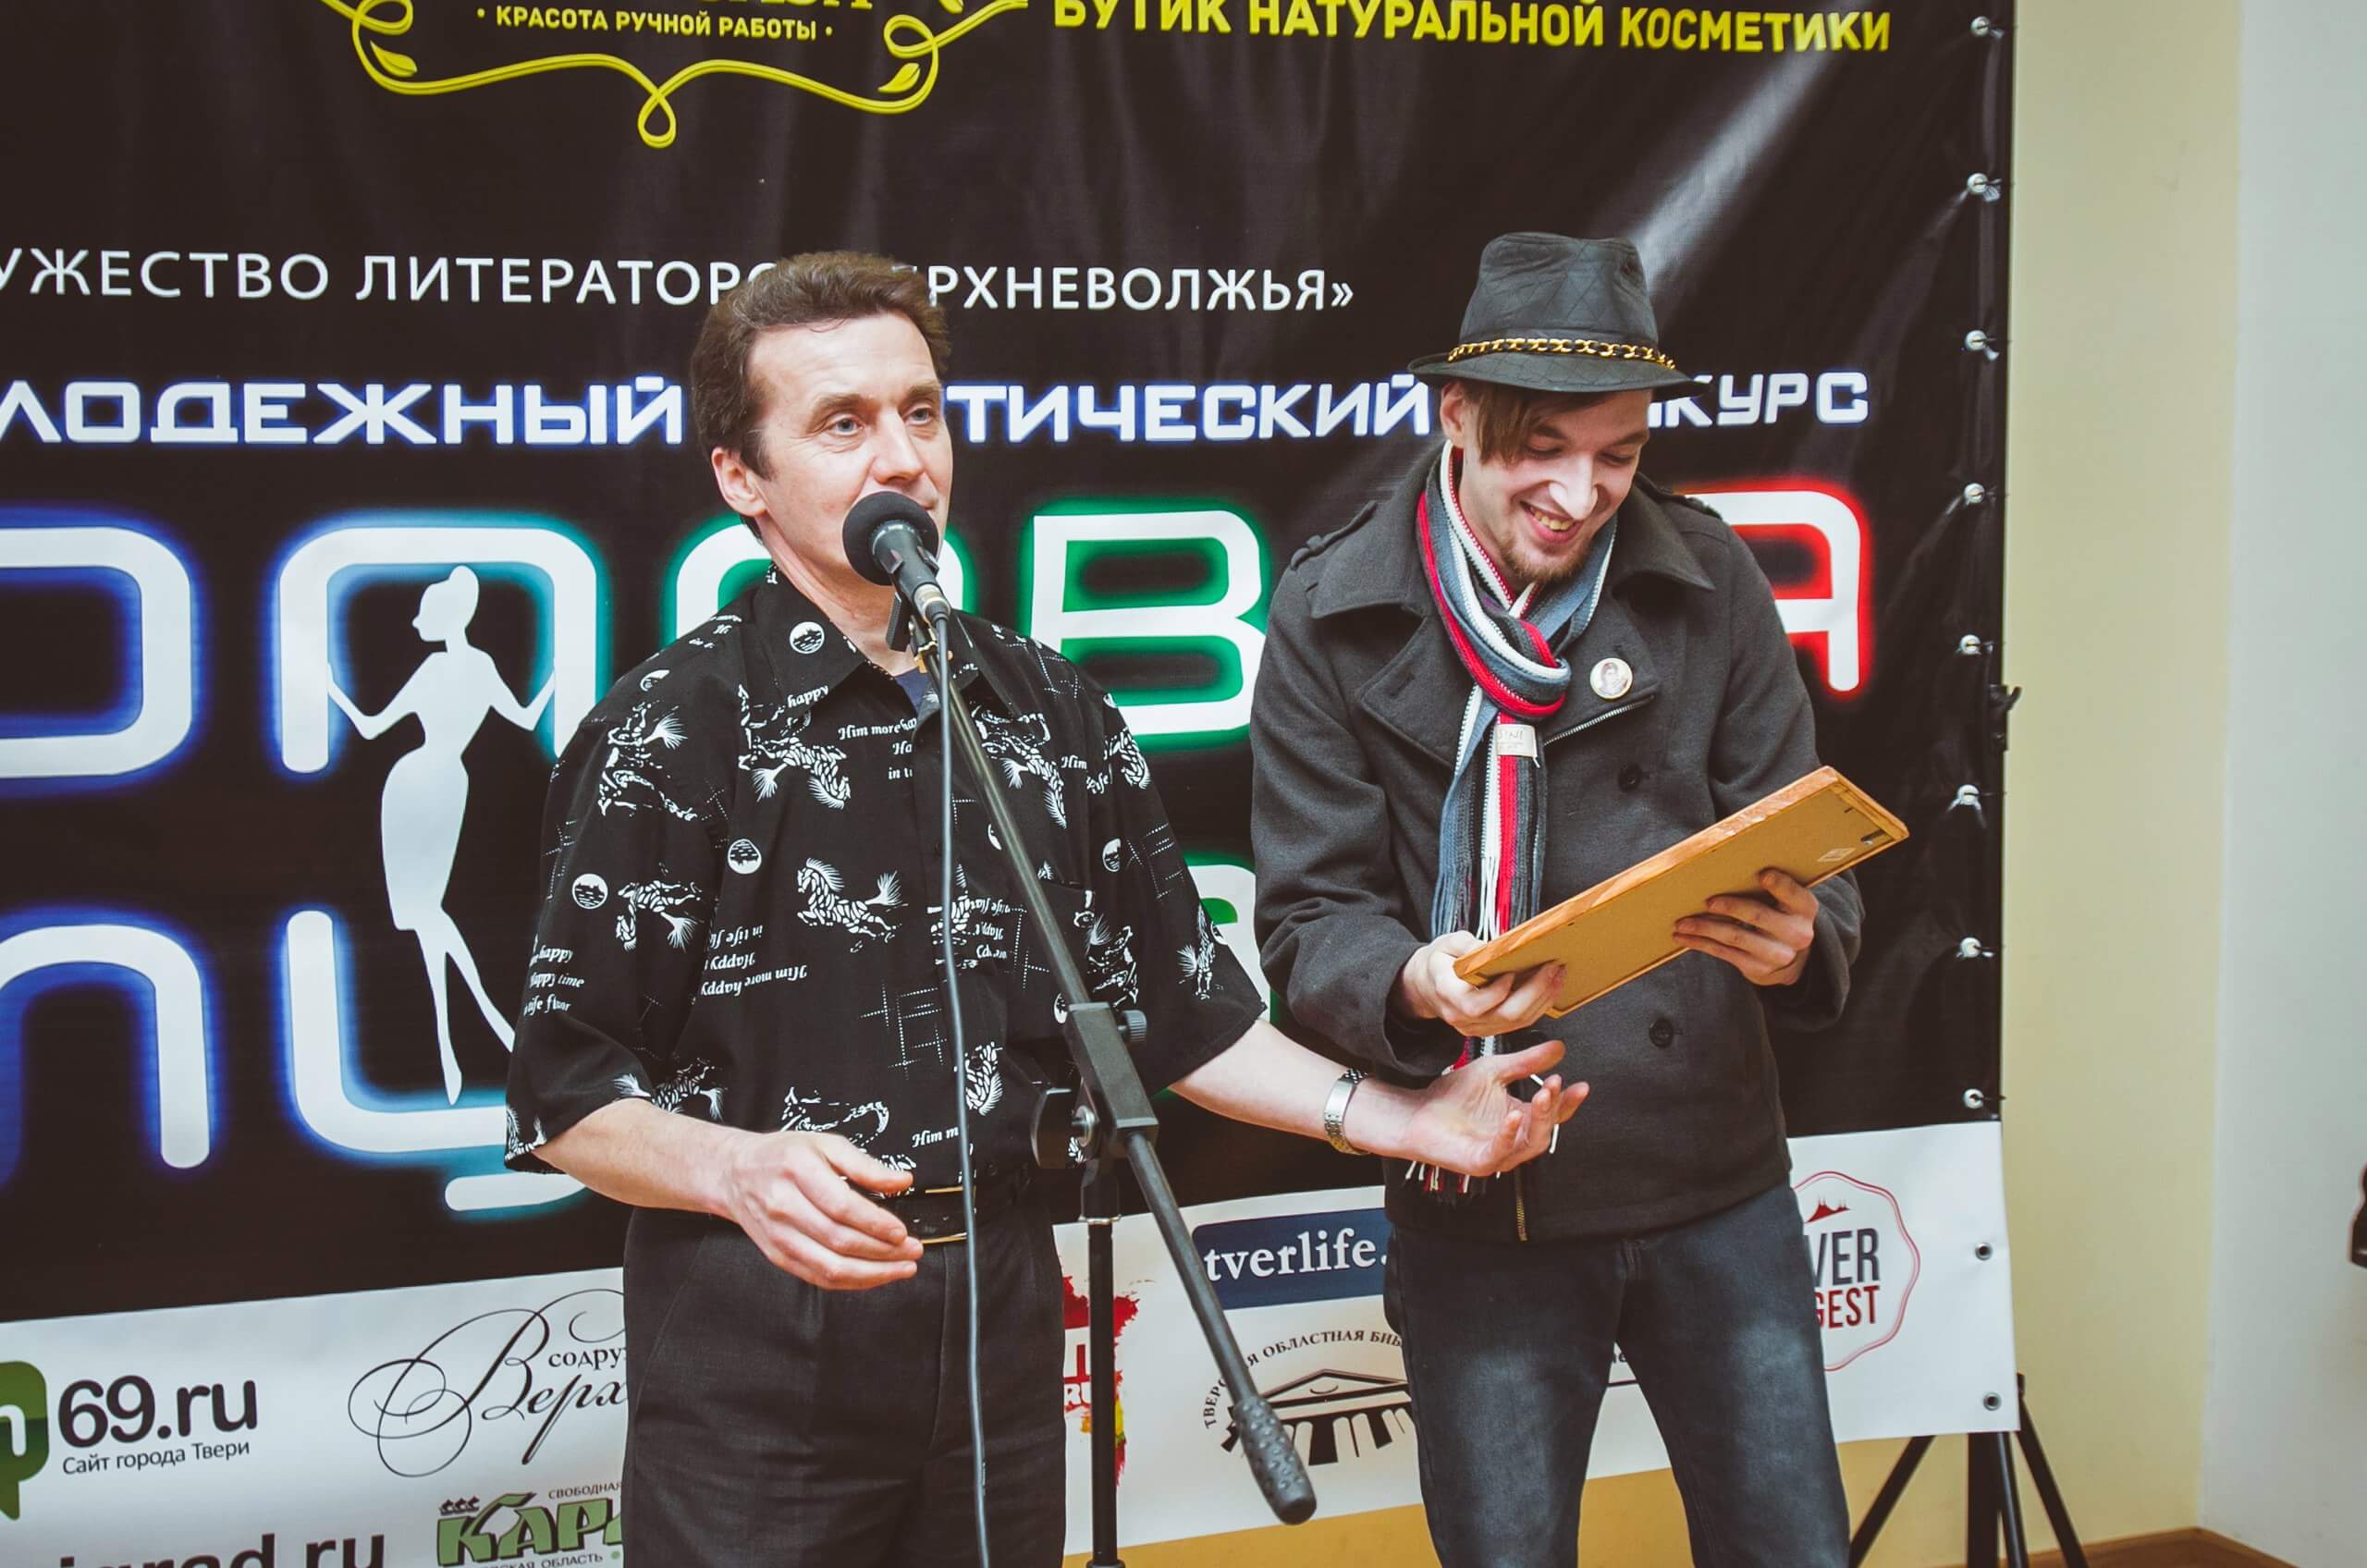 Продлен прием заявок на участие в поэтическом конкурсе "Неоновая муза"